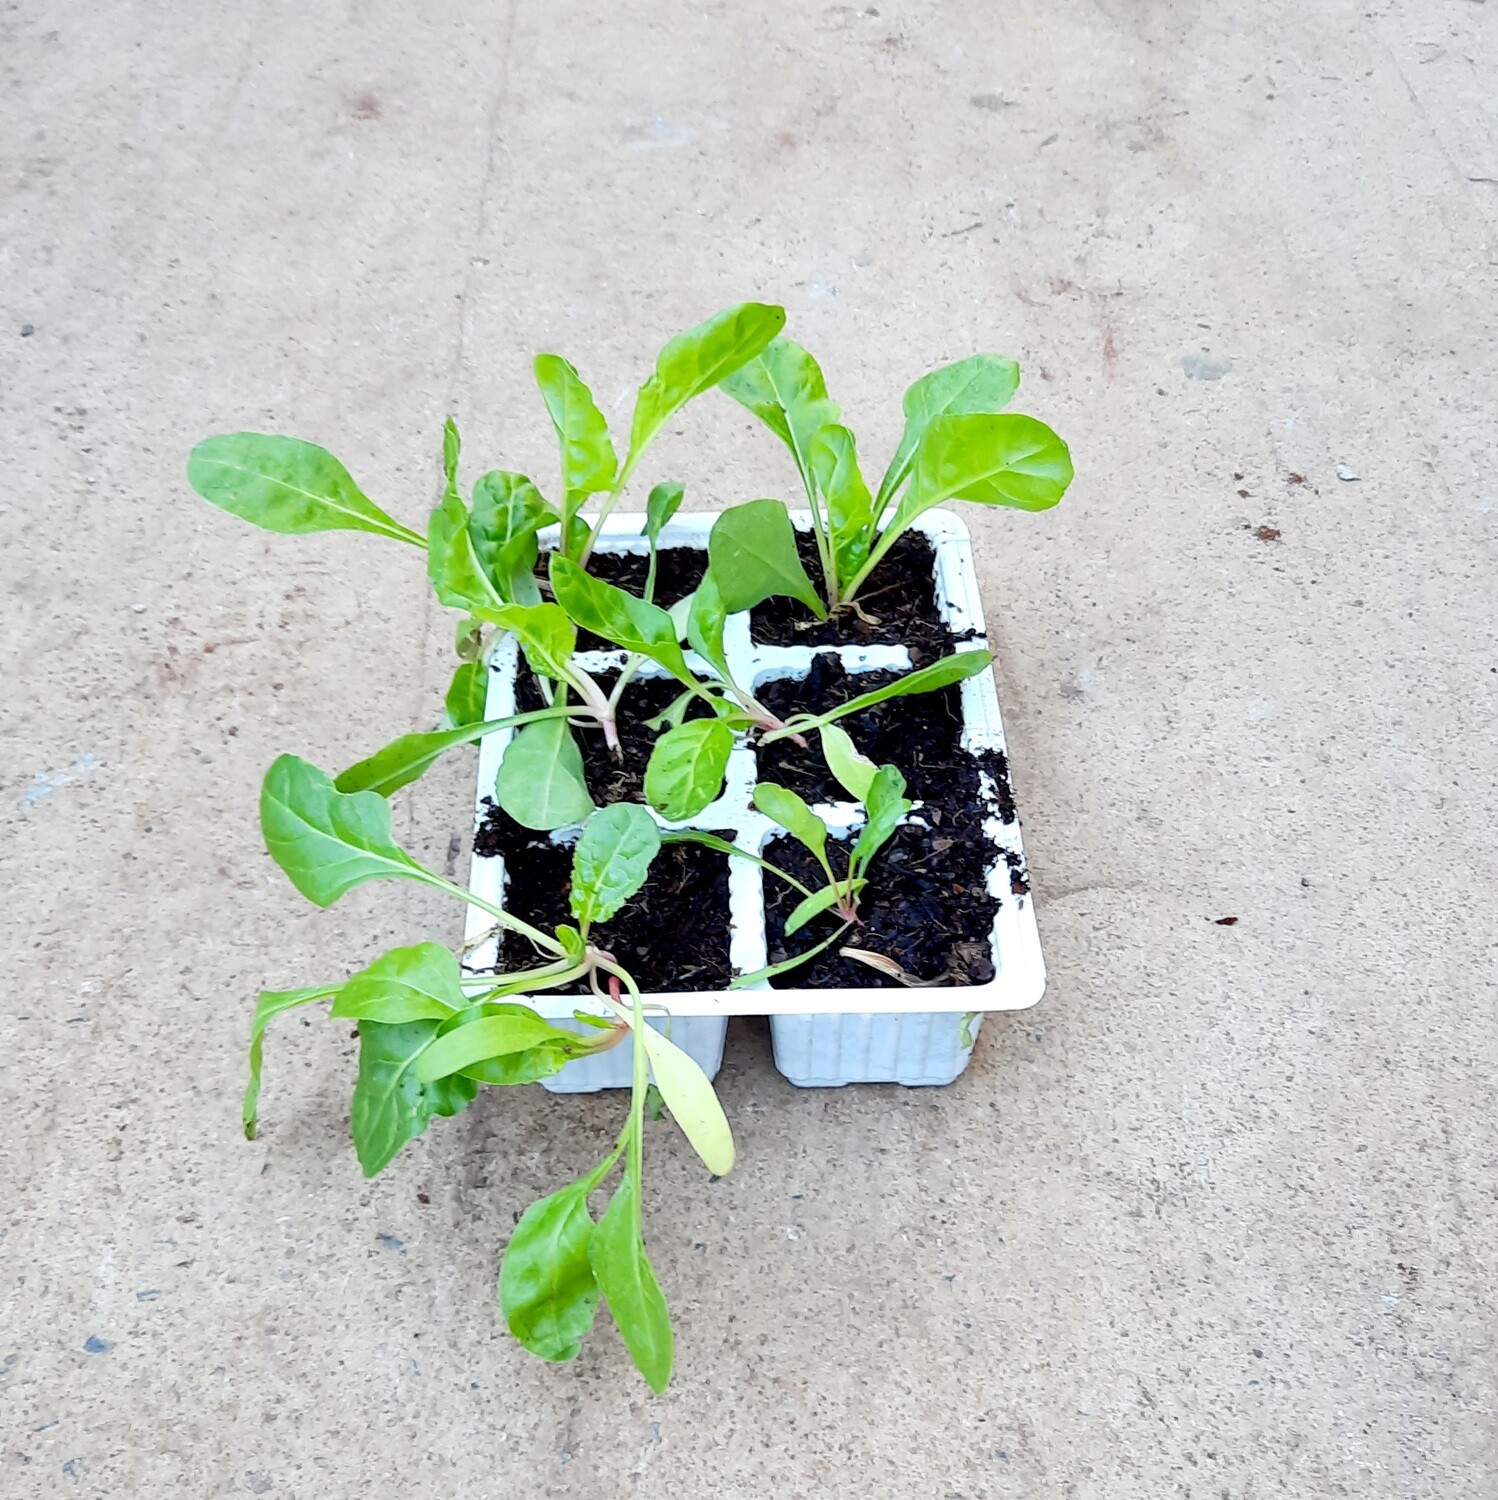 Spinach Ford Hook Giant 6 Pack Veg Seedlings